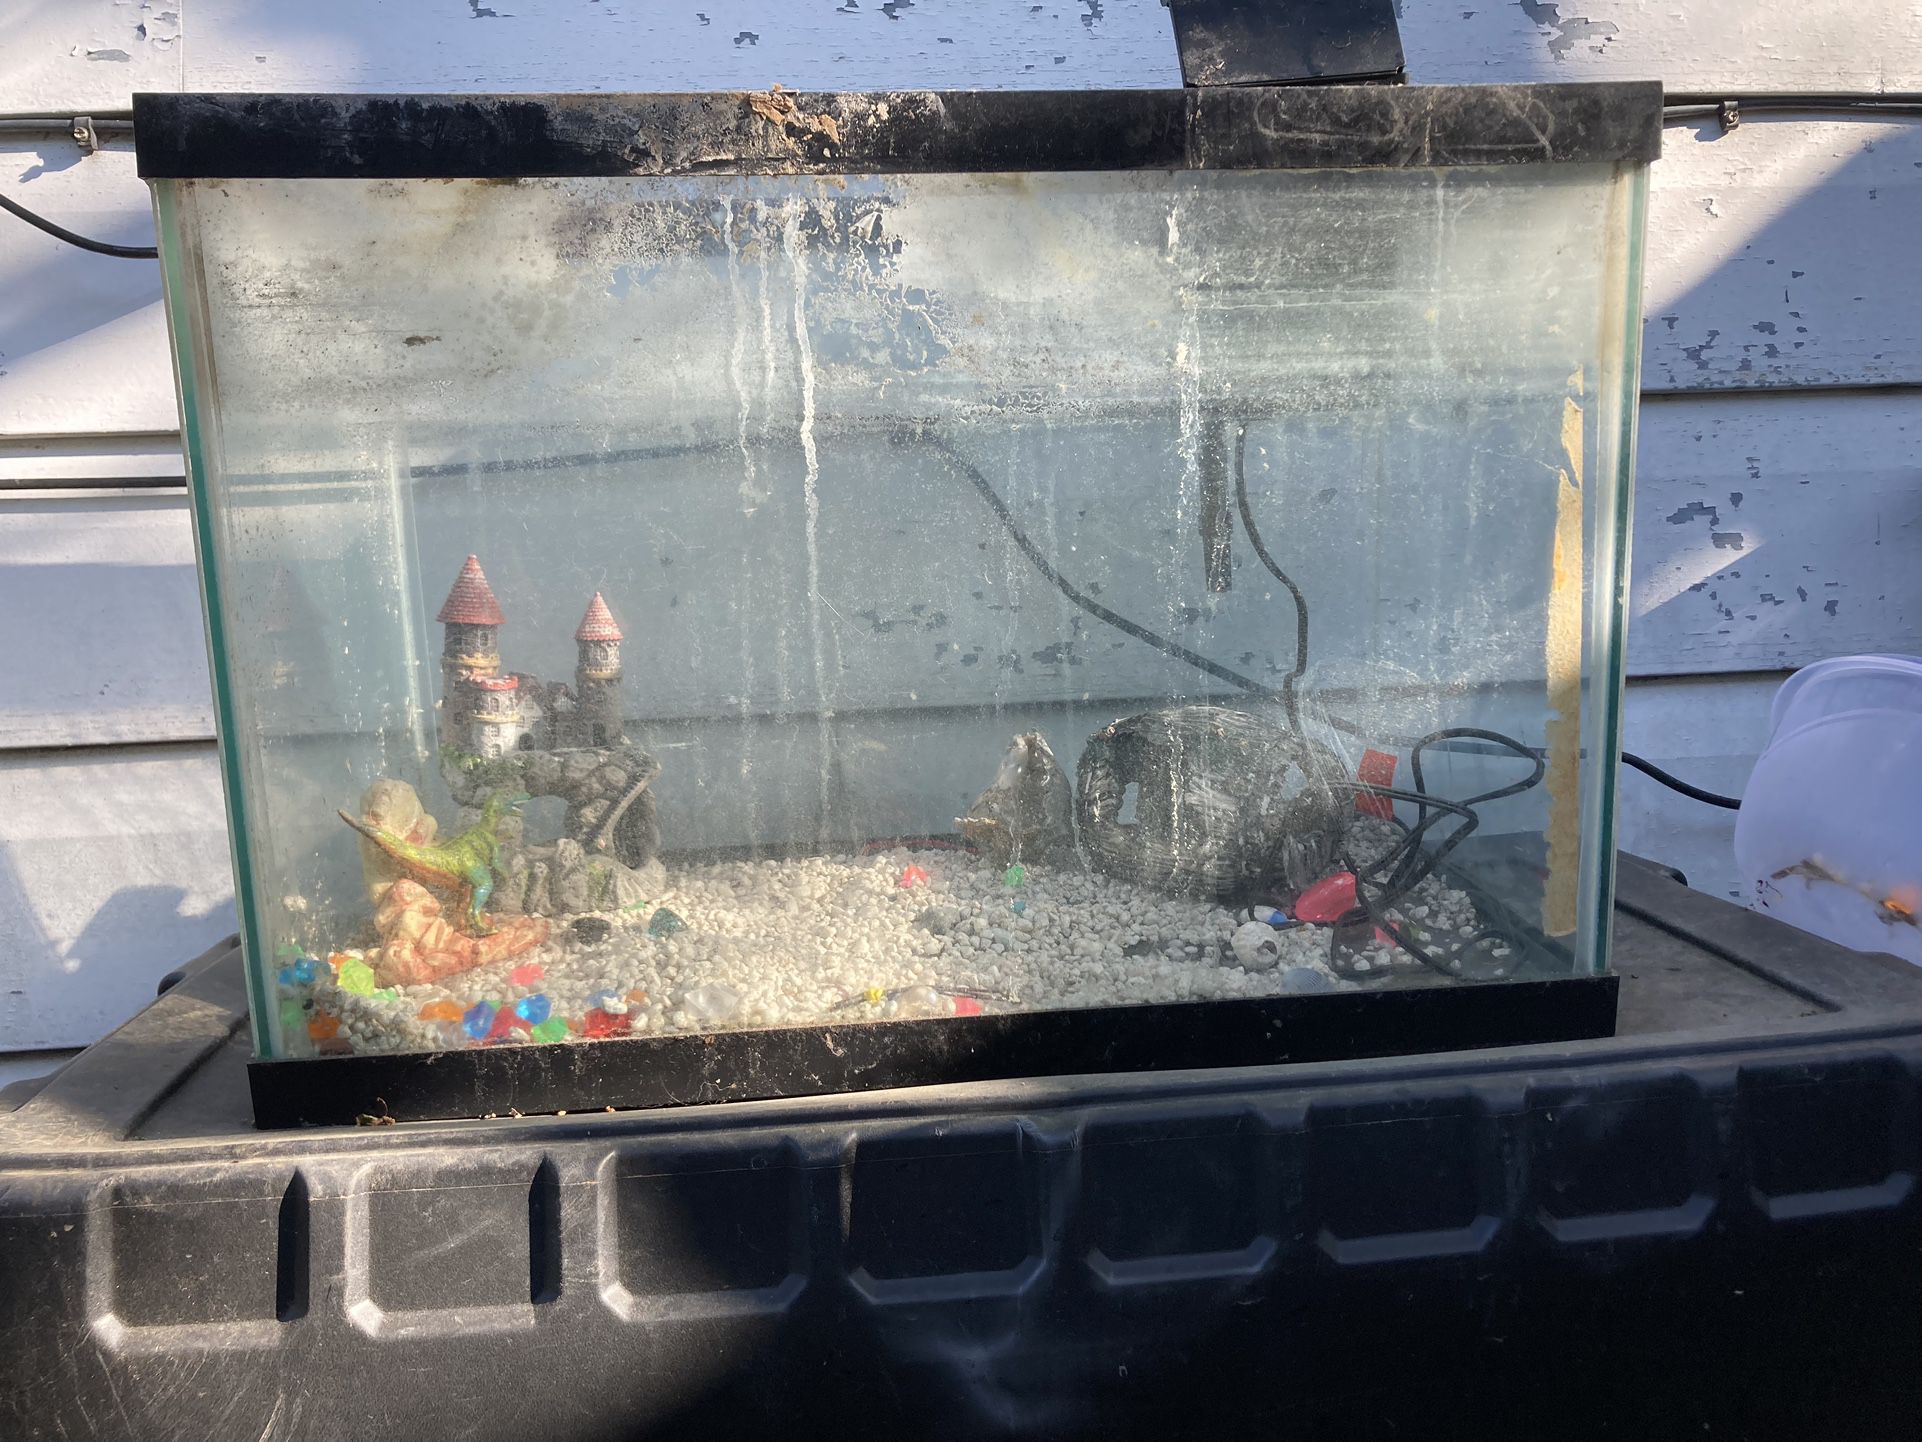 Fish Tanks With Pump And Accessories /Tanque De Pescado Con Pompa Y Accesorios 